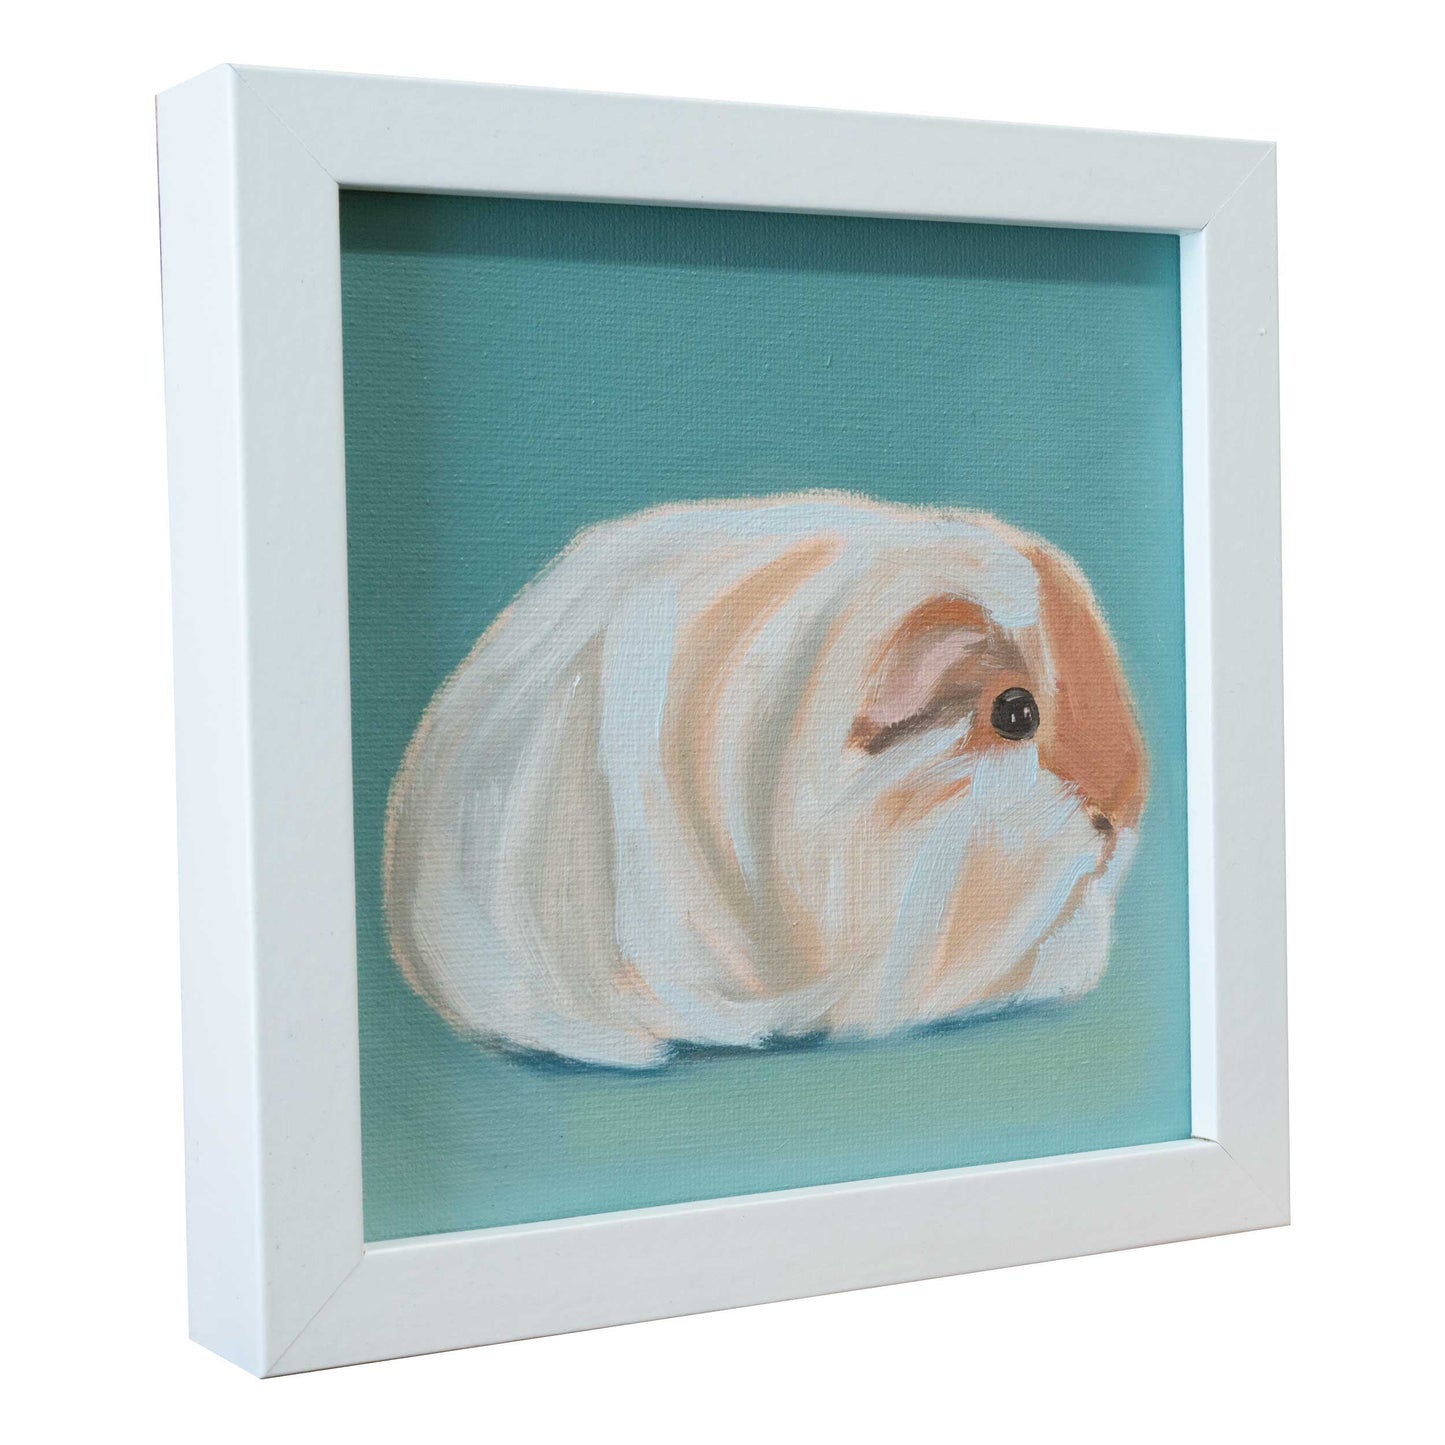 Guinea pig, unique, oil painting, single piece, 15 x 15 cm